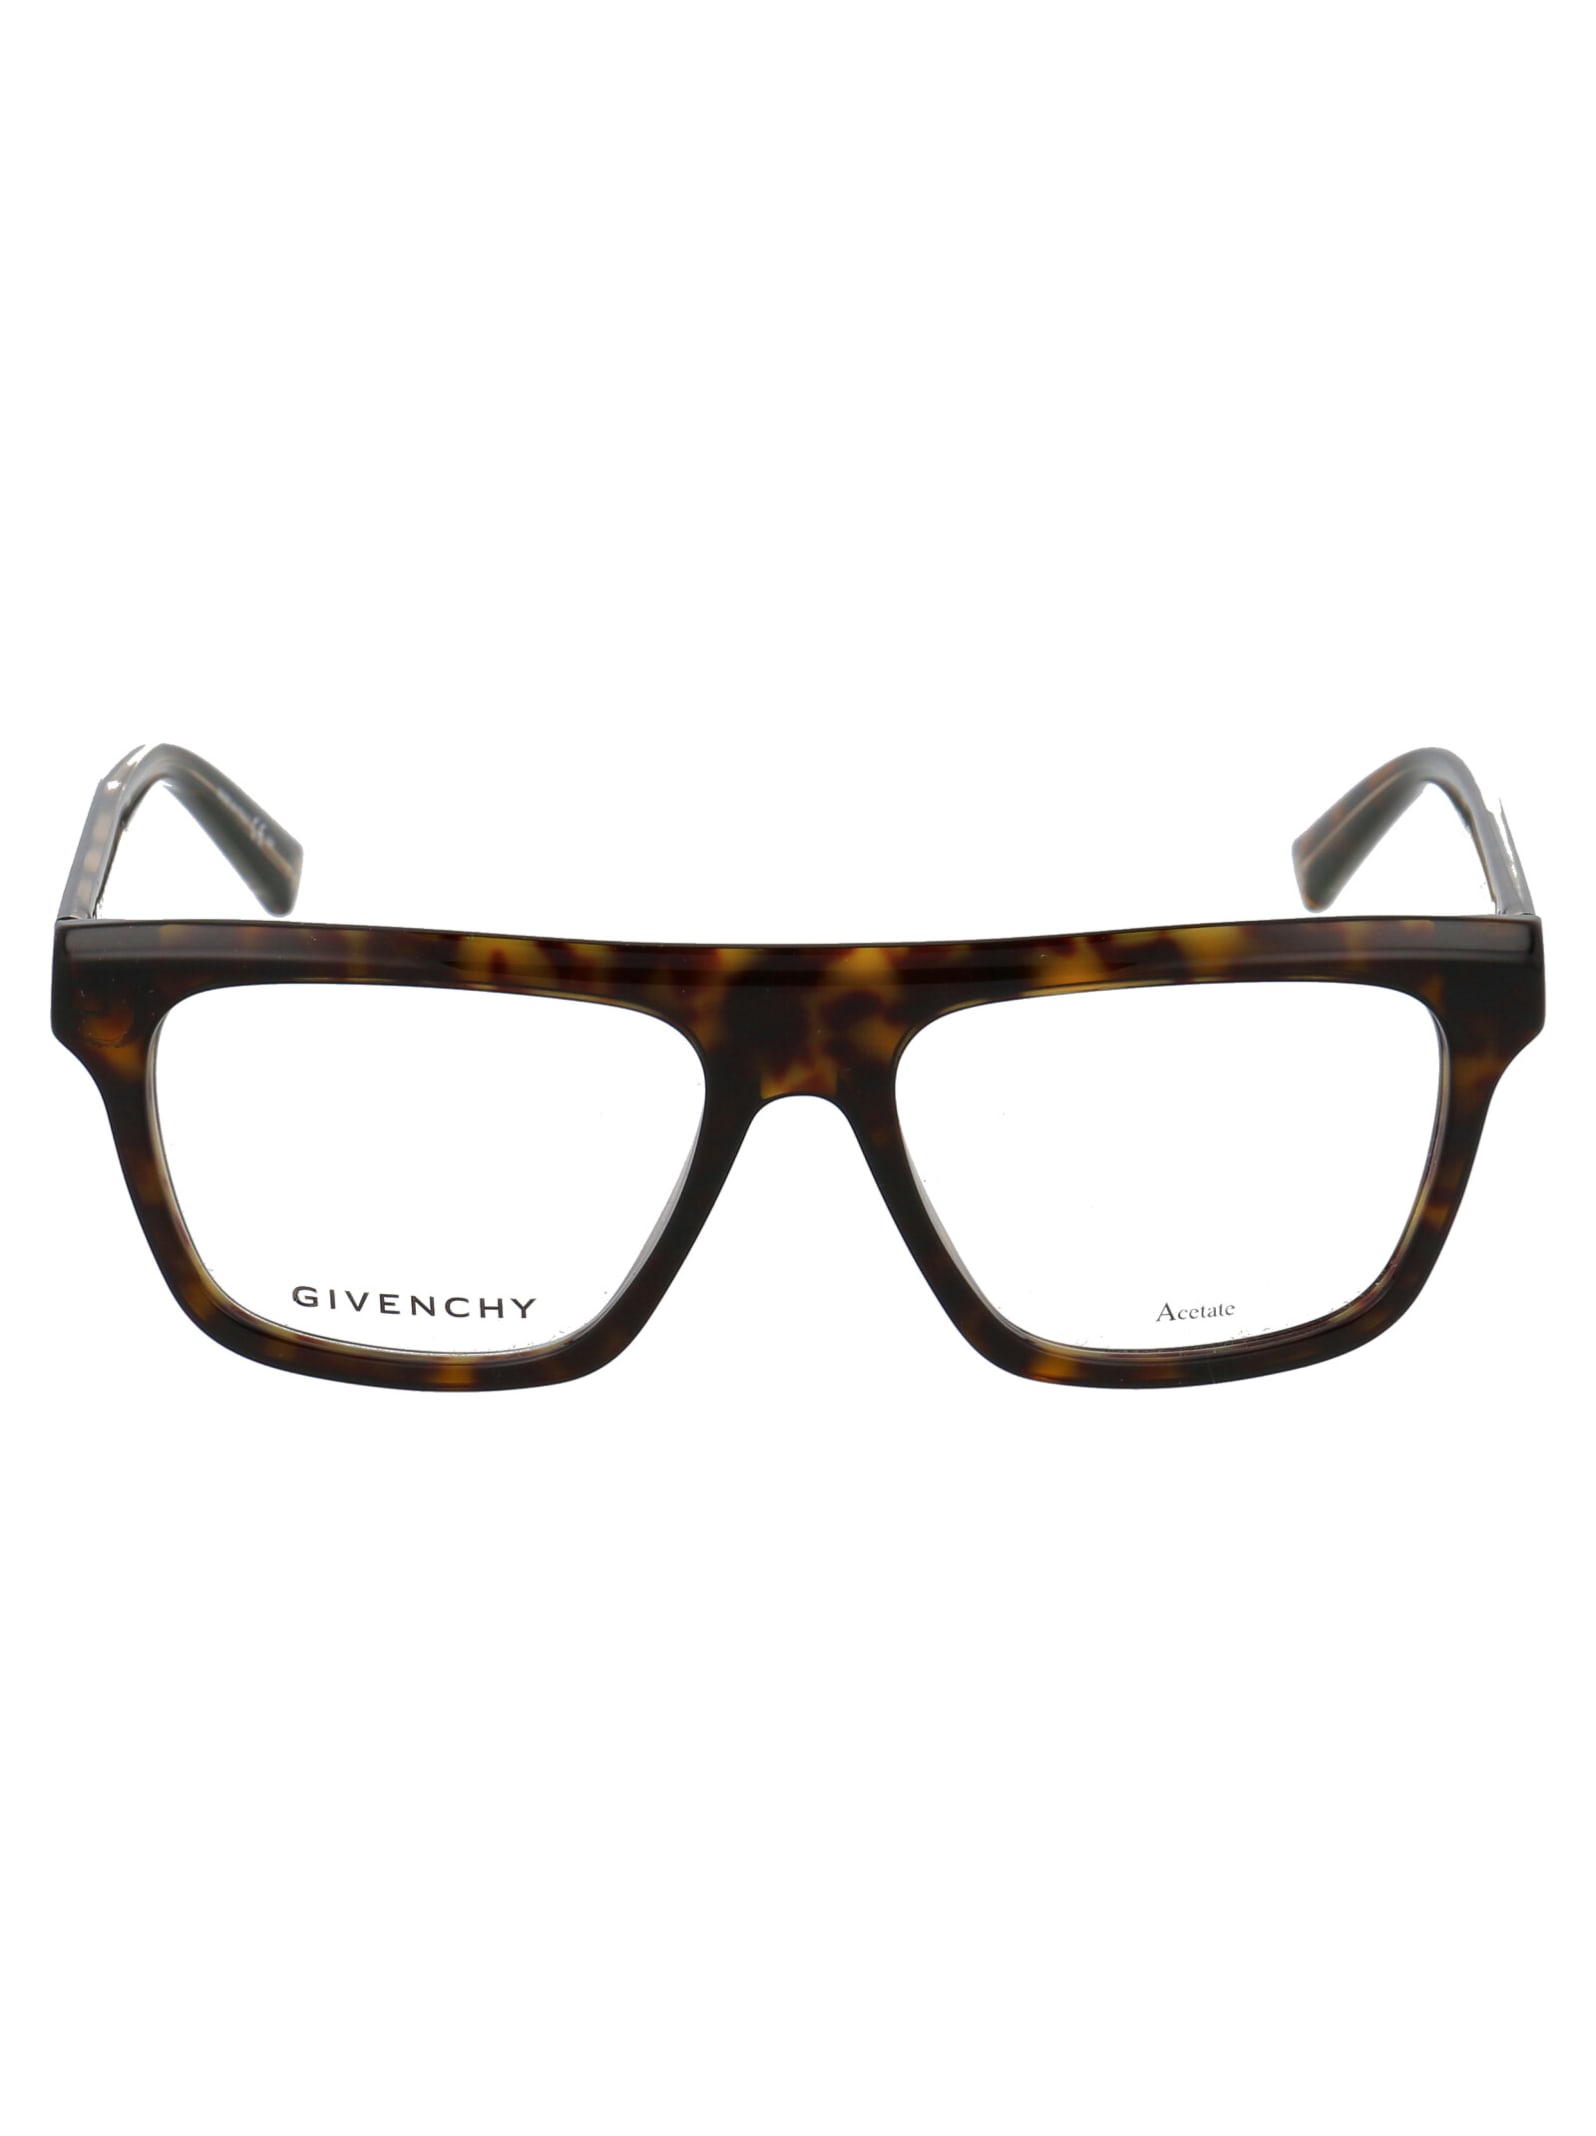 Givenchy Eyewear Gv 0136 Glasses